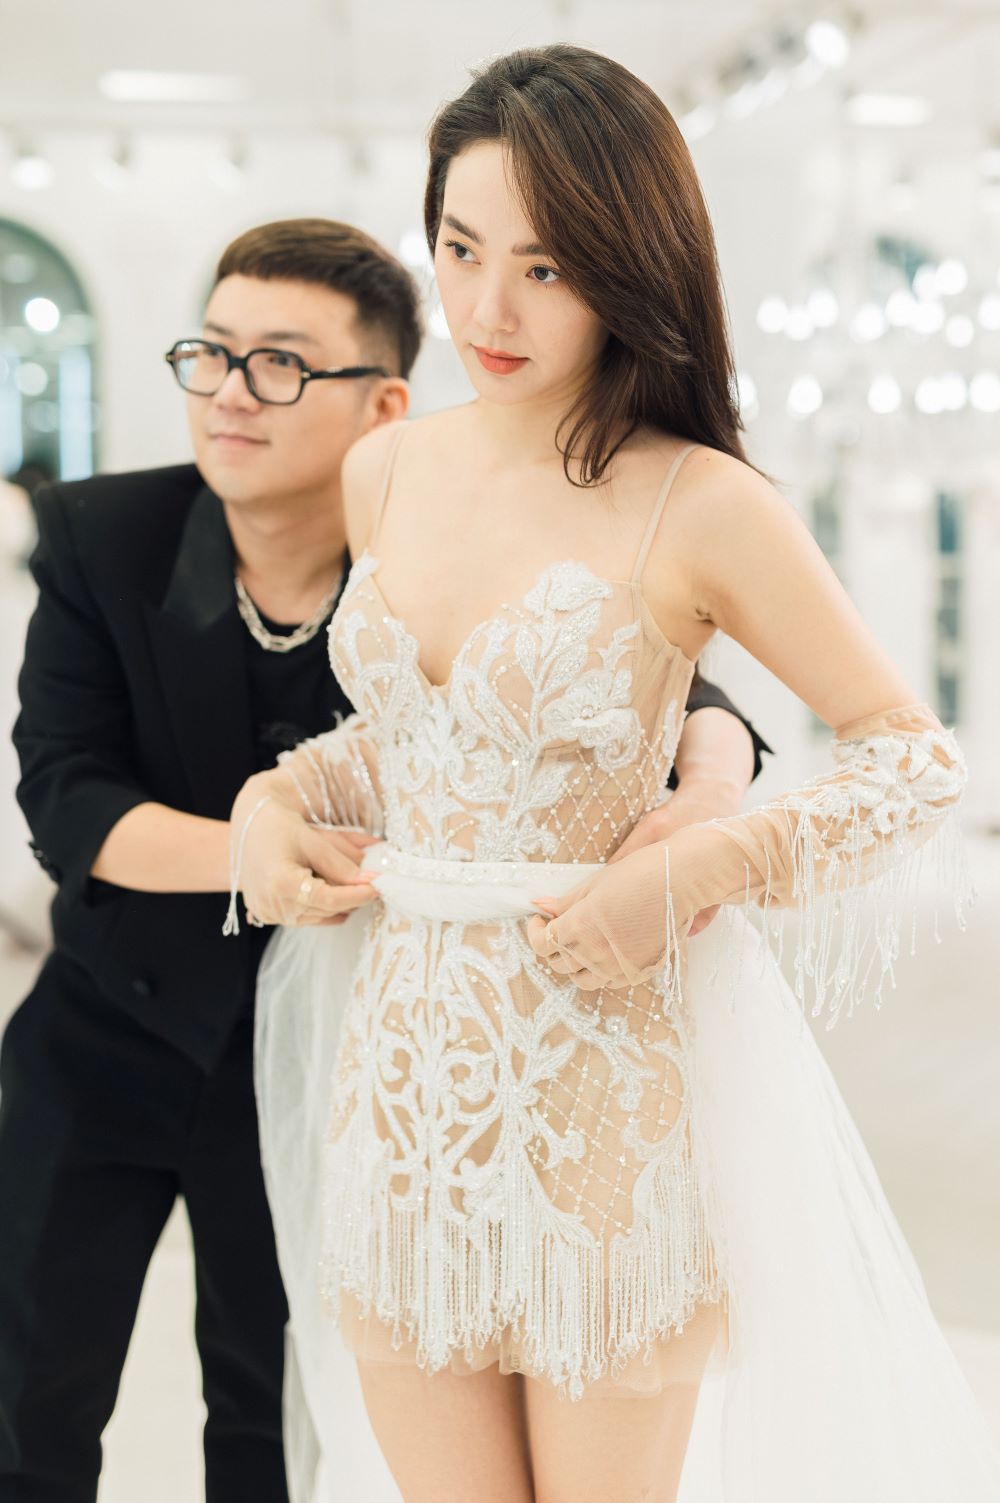 Minh Hằng lựa chọn nhiều thiết kế để diện trong lễ cưới. Cô được các nhà thiết kế là bạn thân lâu năm sáng tạo trang phục dựa trên phong cách và sở thích.